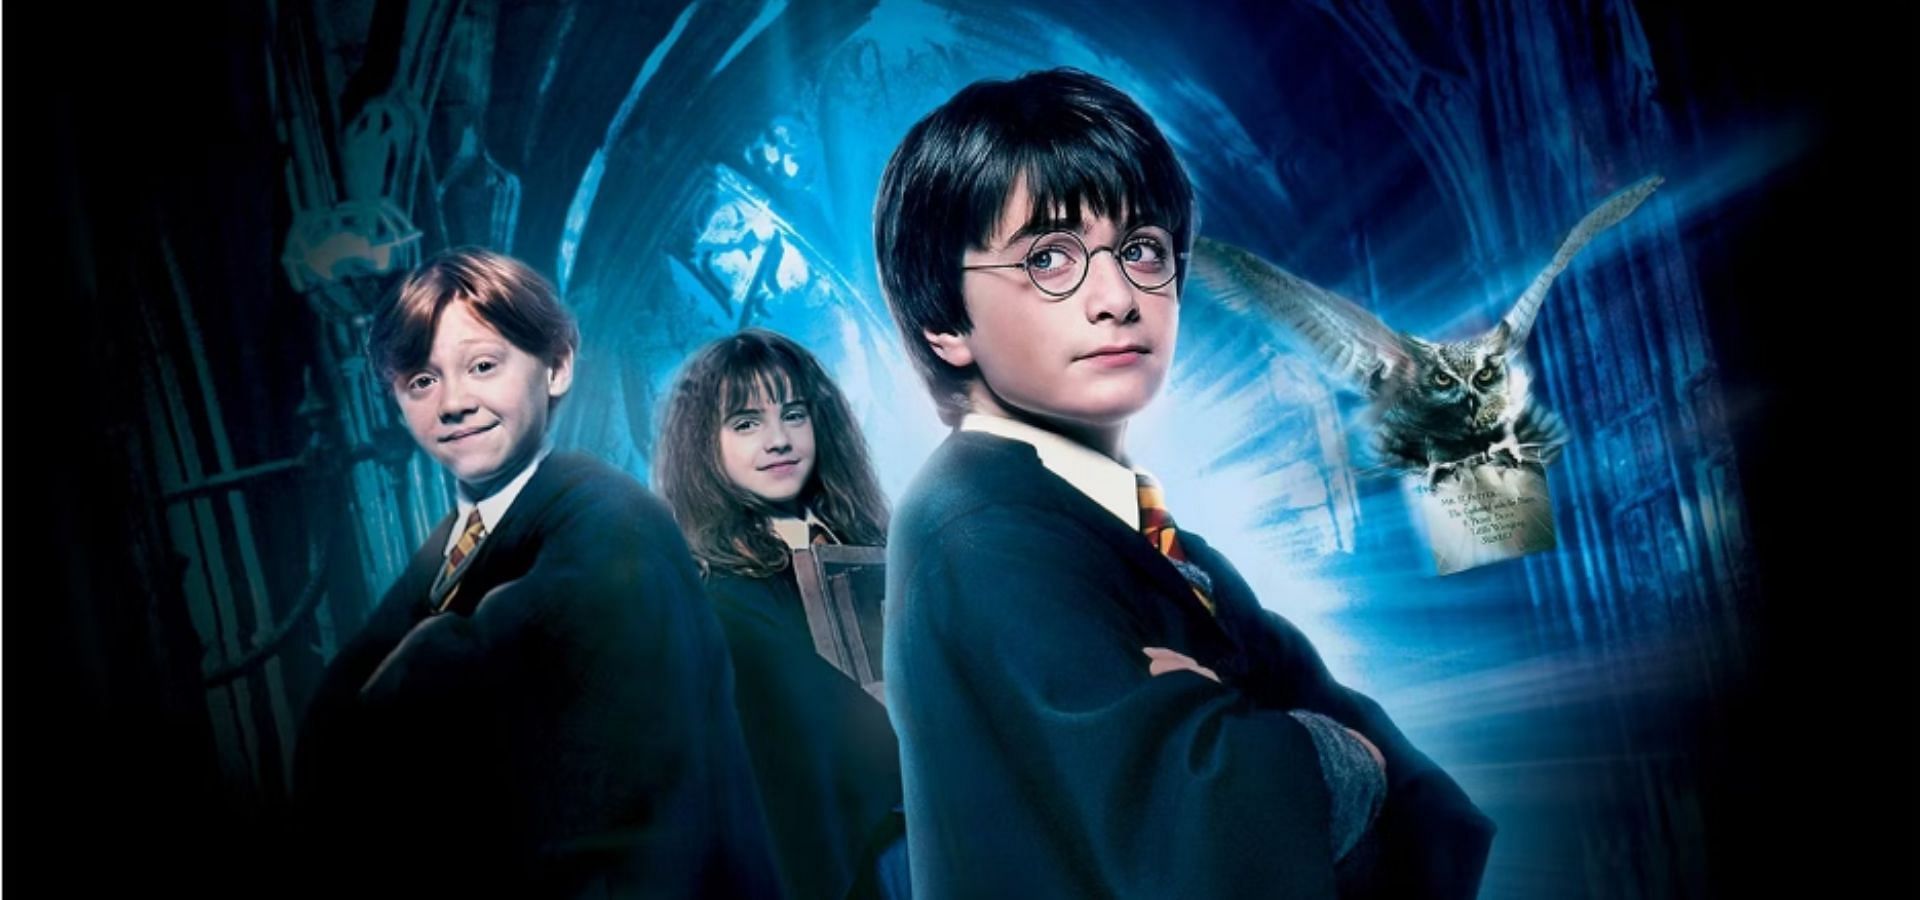 Harry Potter (Image via Warner Bros.)